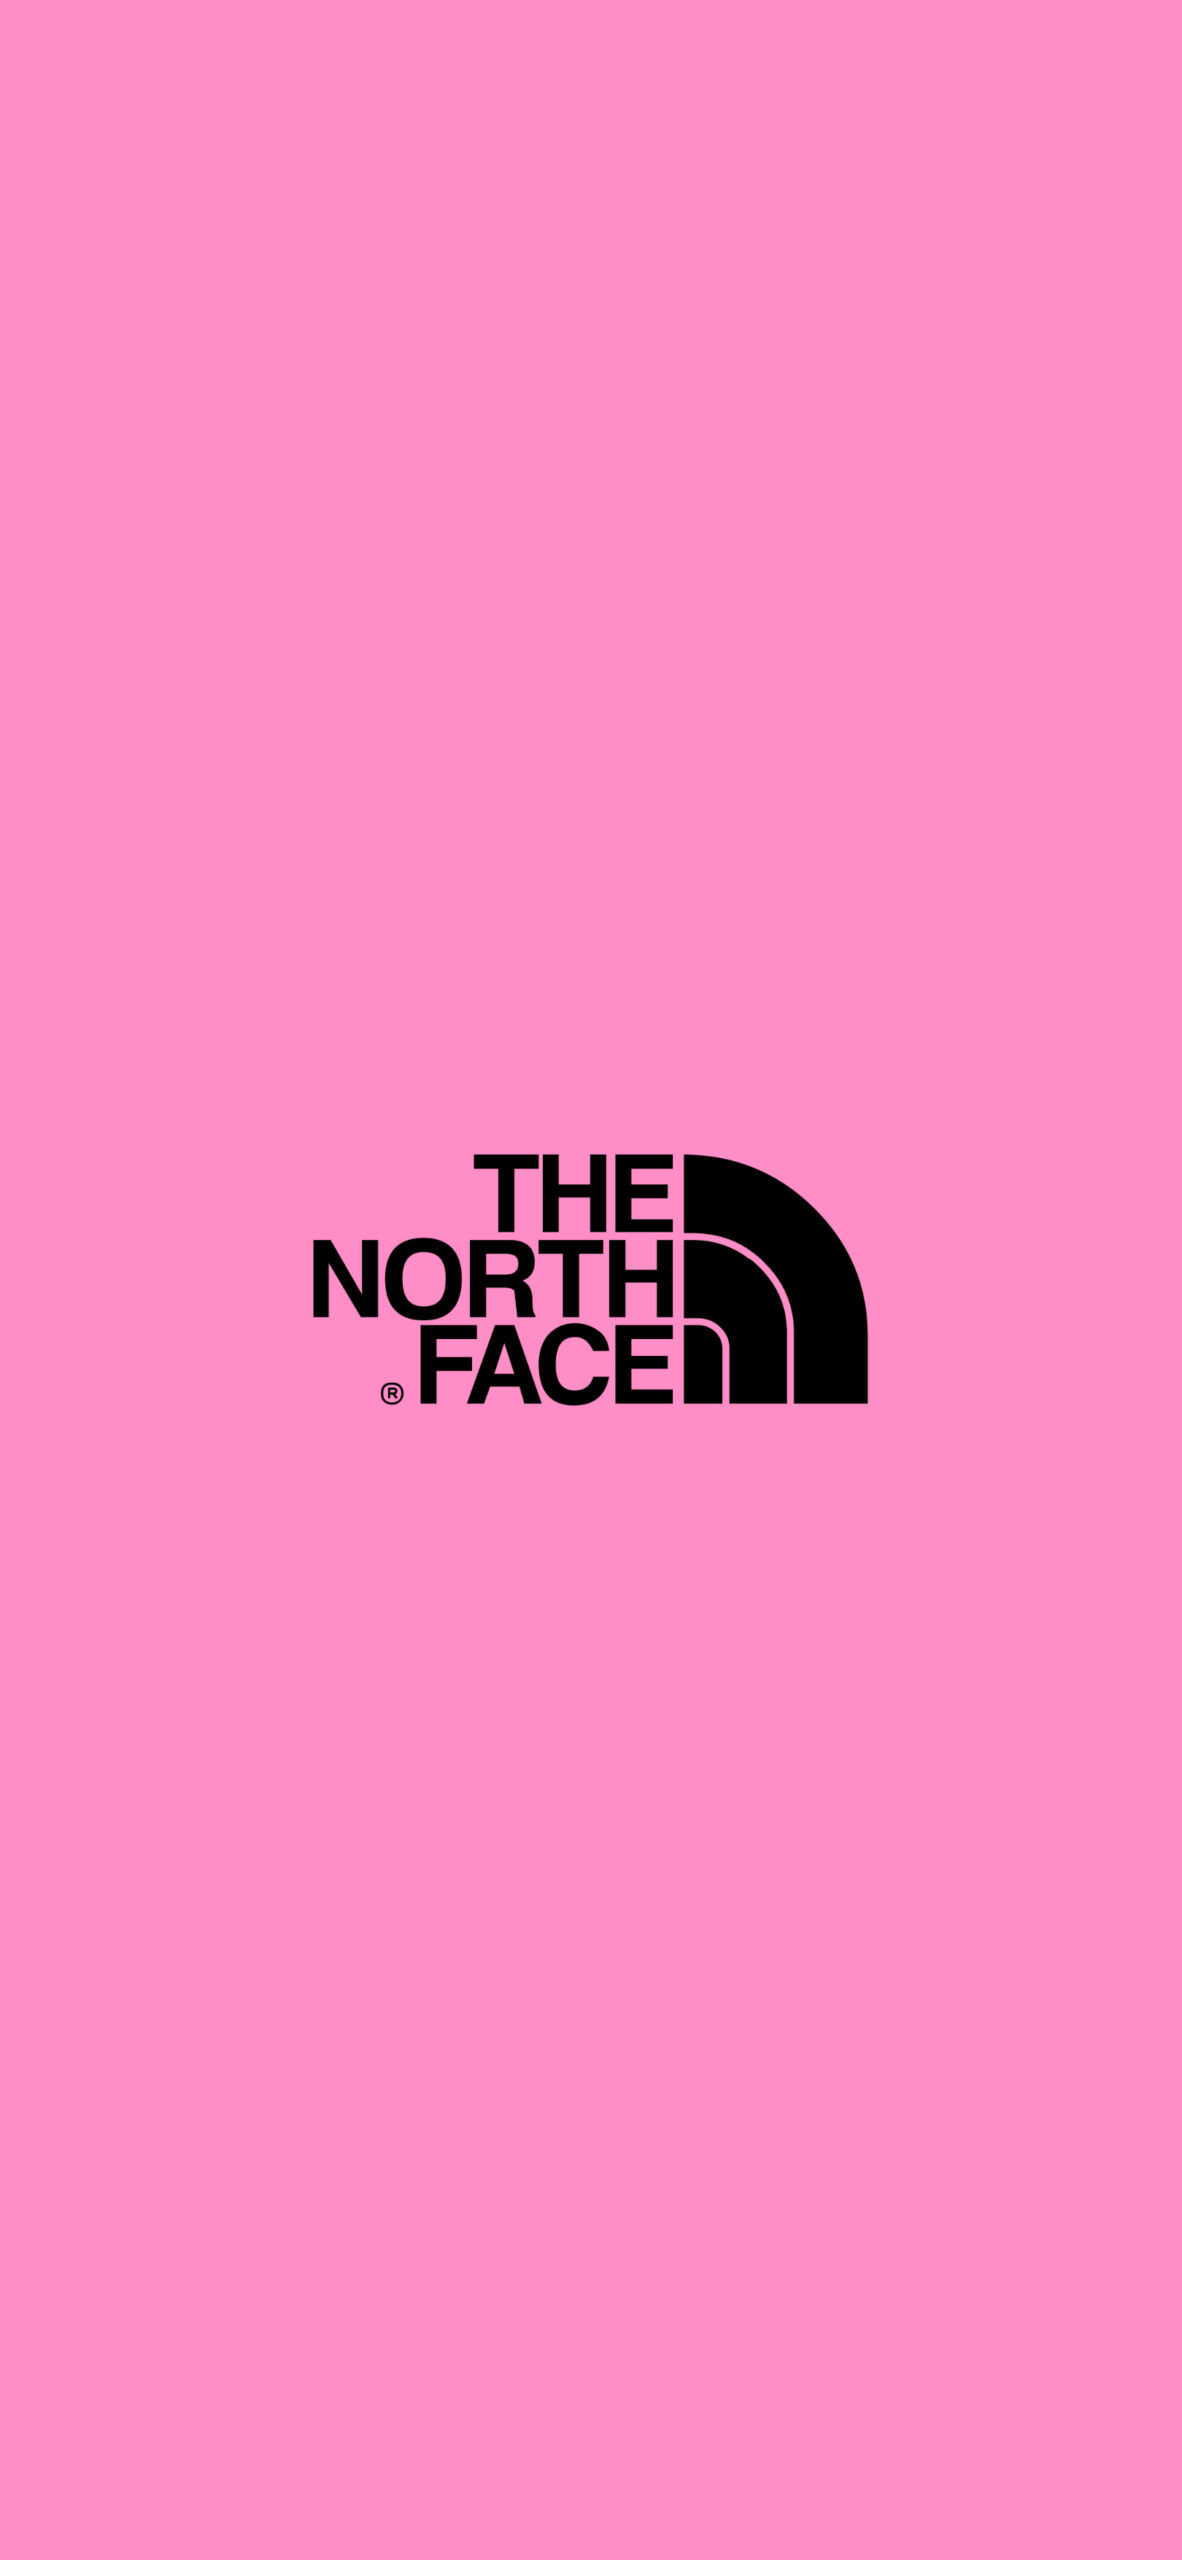 THE NORTH FACE /ザ・ノース・フェイスのおしゃれな無料高画質スマホ壁紙51枚 | エモい!!スマホ壁紙辞典